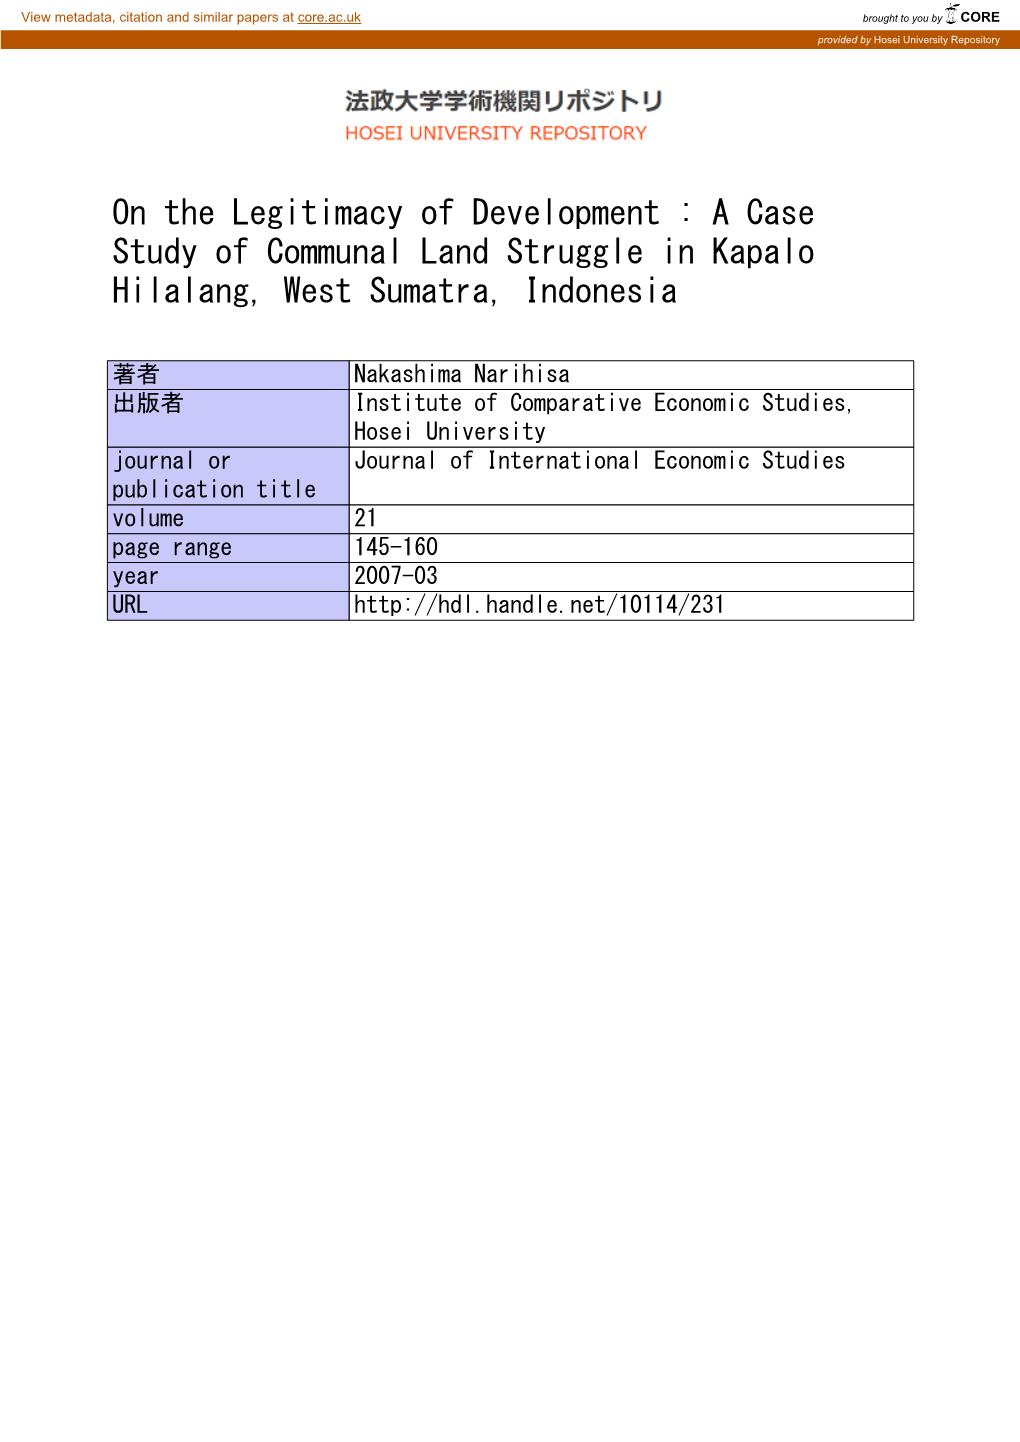 A Case Study of Communal Land Struggle in Kapalo Hilalang, West Sumatra, Indonesia